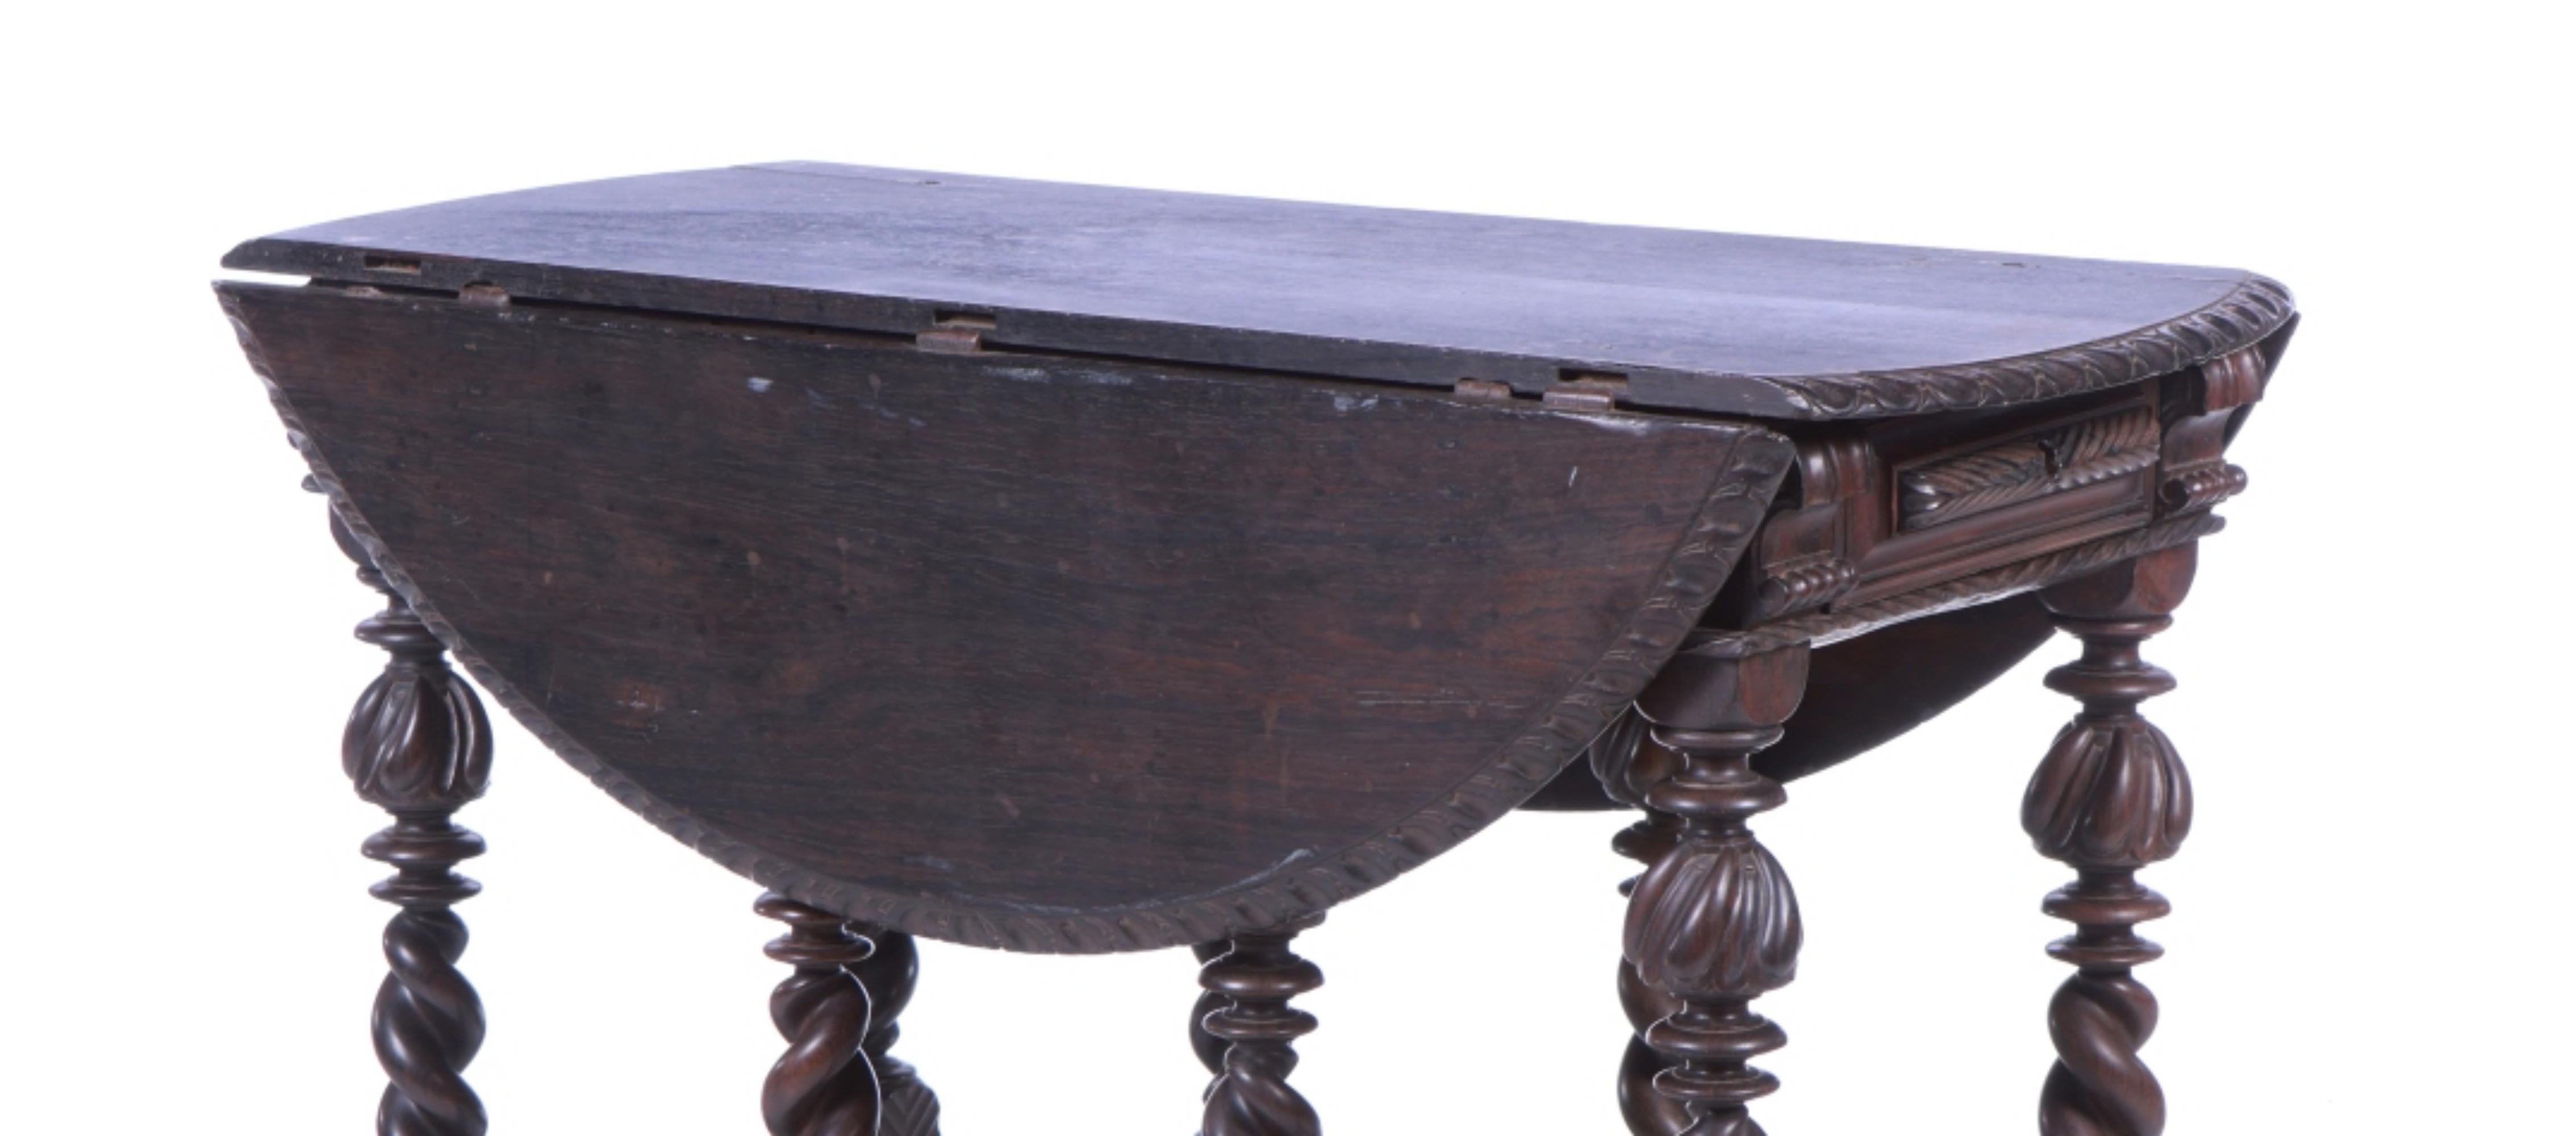 Table à onglets
Portugais du XVIIe siècle, en bois d'acajou. 
Fermer : 110cm x 84cm x 53
Bon état.